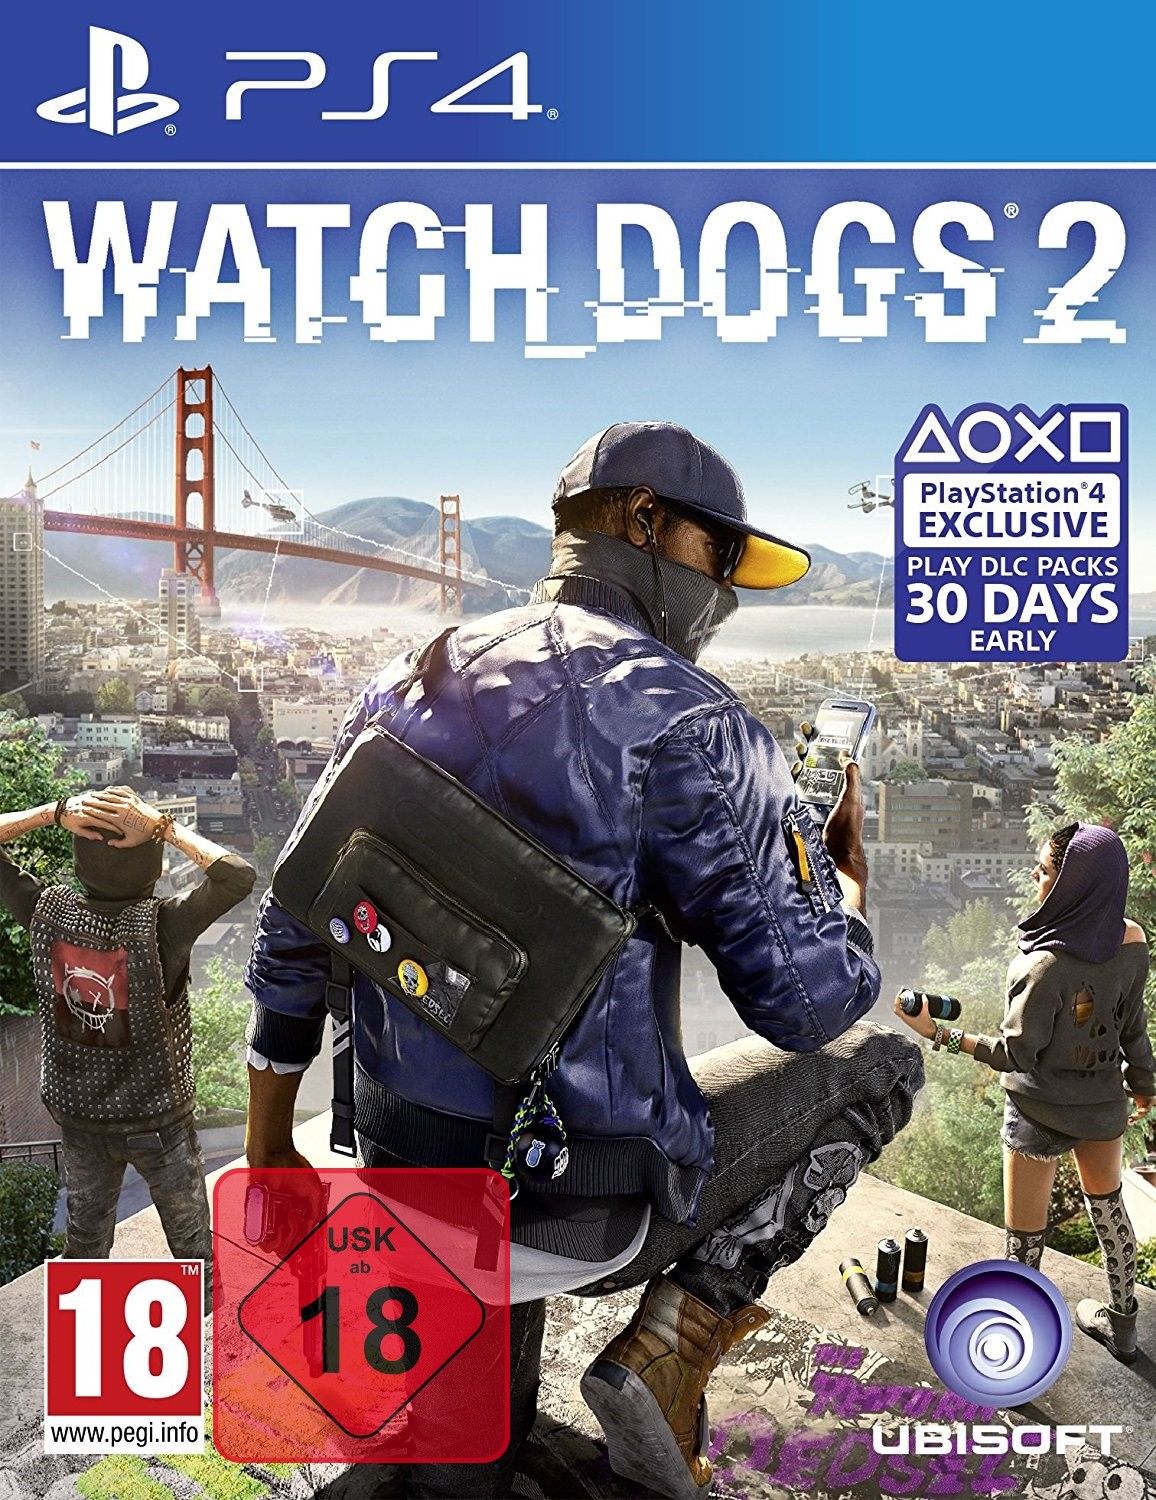 PS4 Spiel Watch Dogs 2 Watchdogs Uncut Playstation 4 NEUWARE OVP